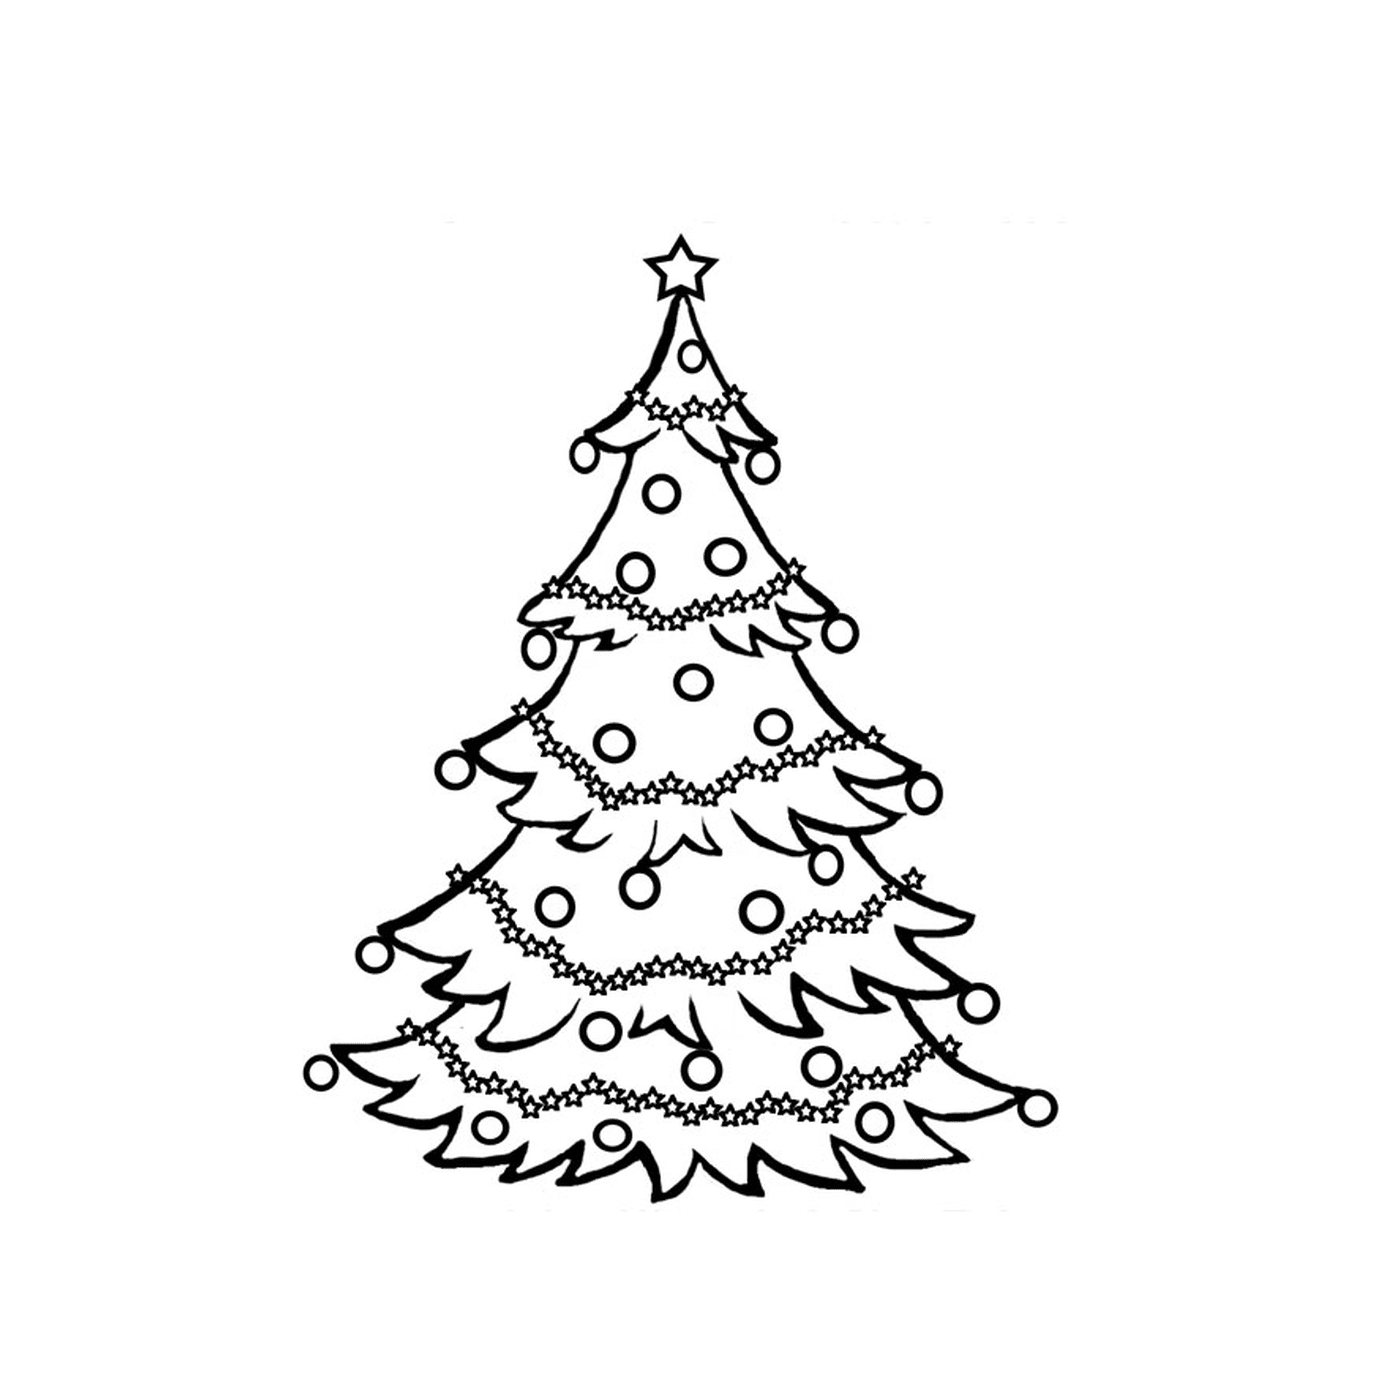  क्रिसमस का पेड़ खुशी से फूला नहीं समाया 